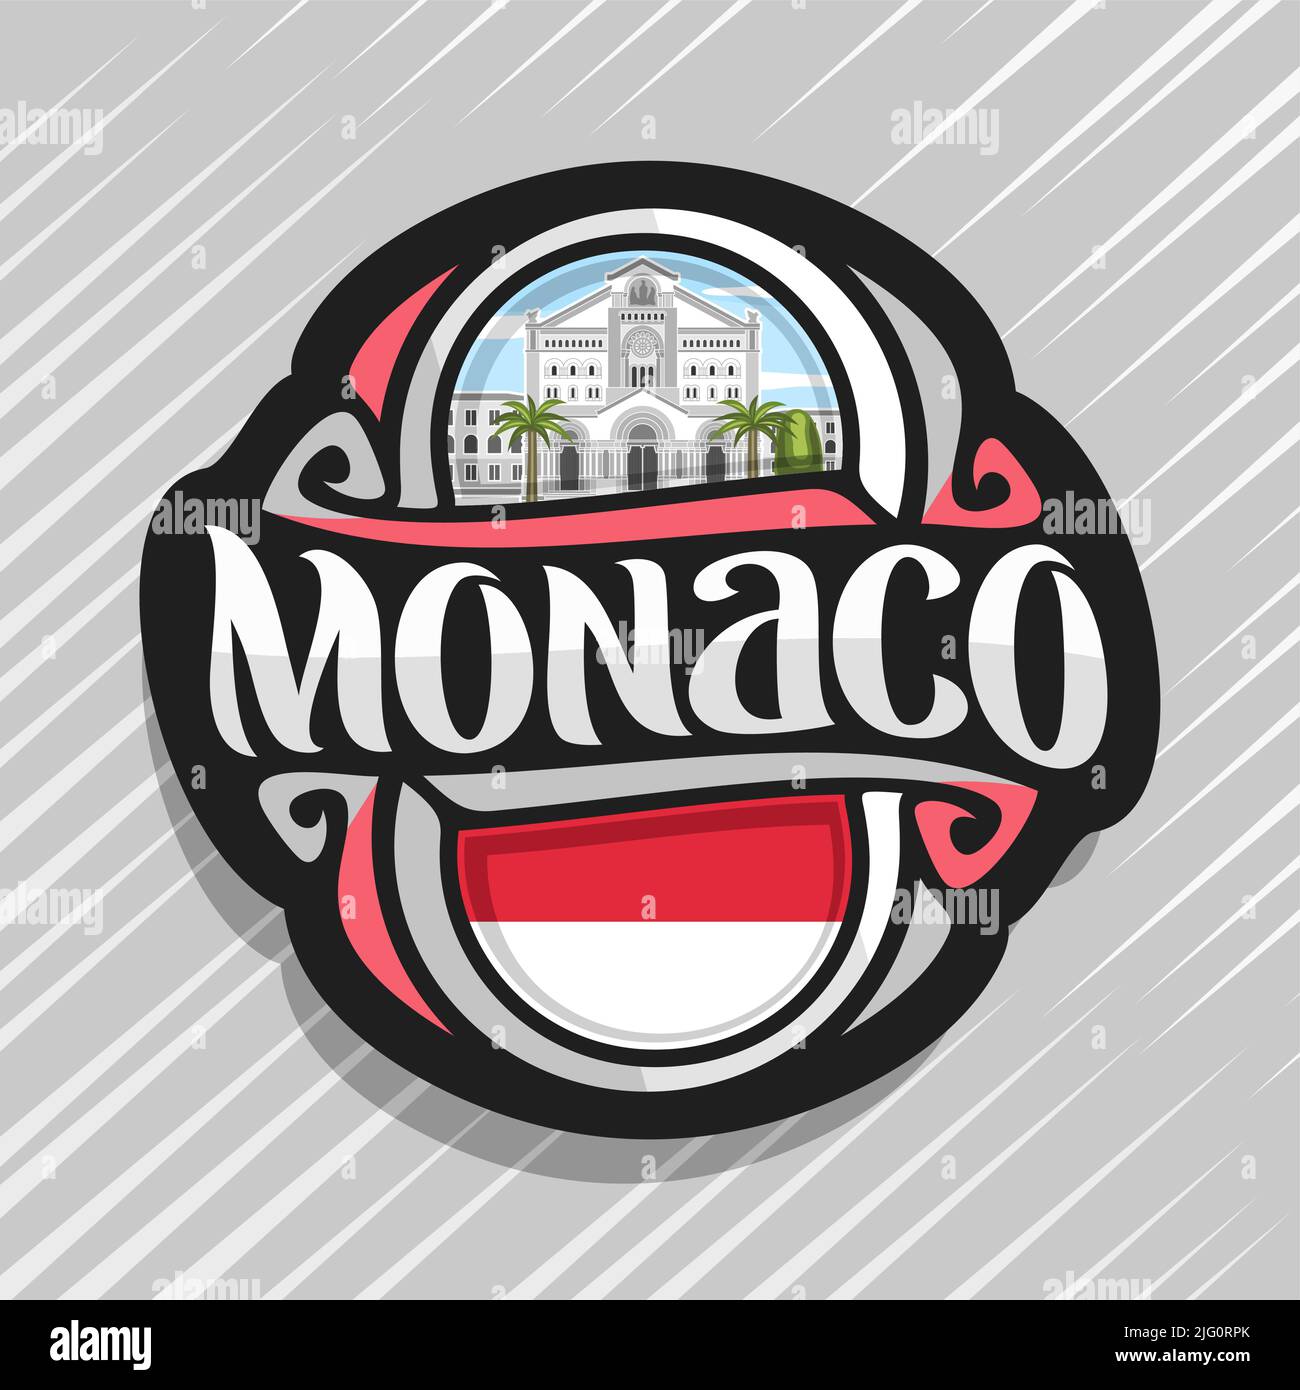 Logo Vector pour Monaco pays, aimant frigo avec drapeau de l'état monégasque, pinceau original typeface for word monaco et symbole national - Saint Nicholas Illustration de Vecteur